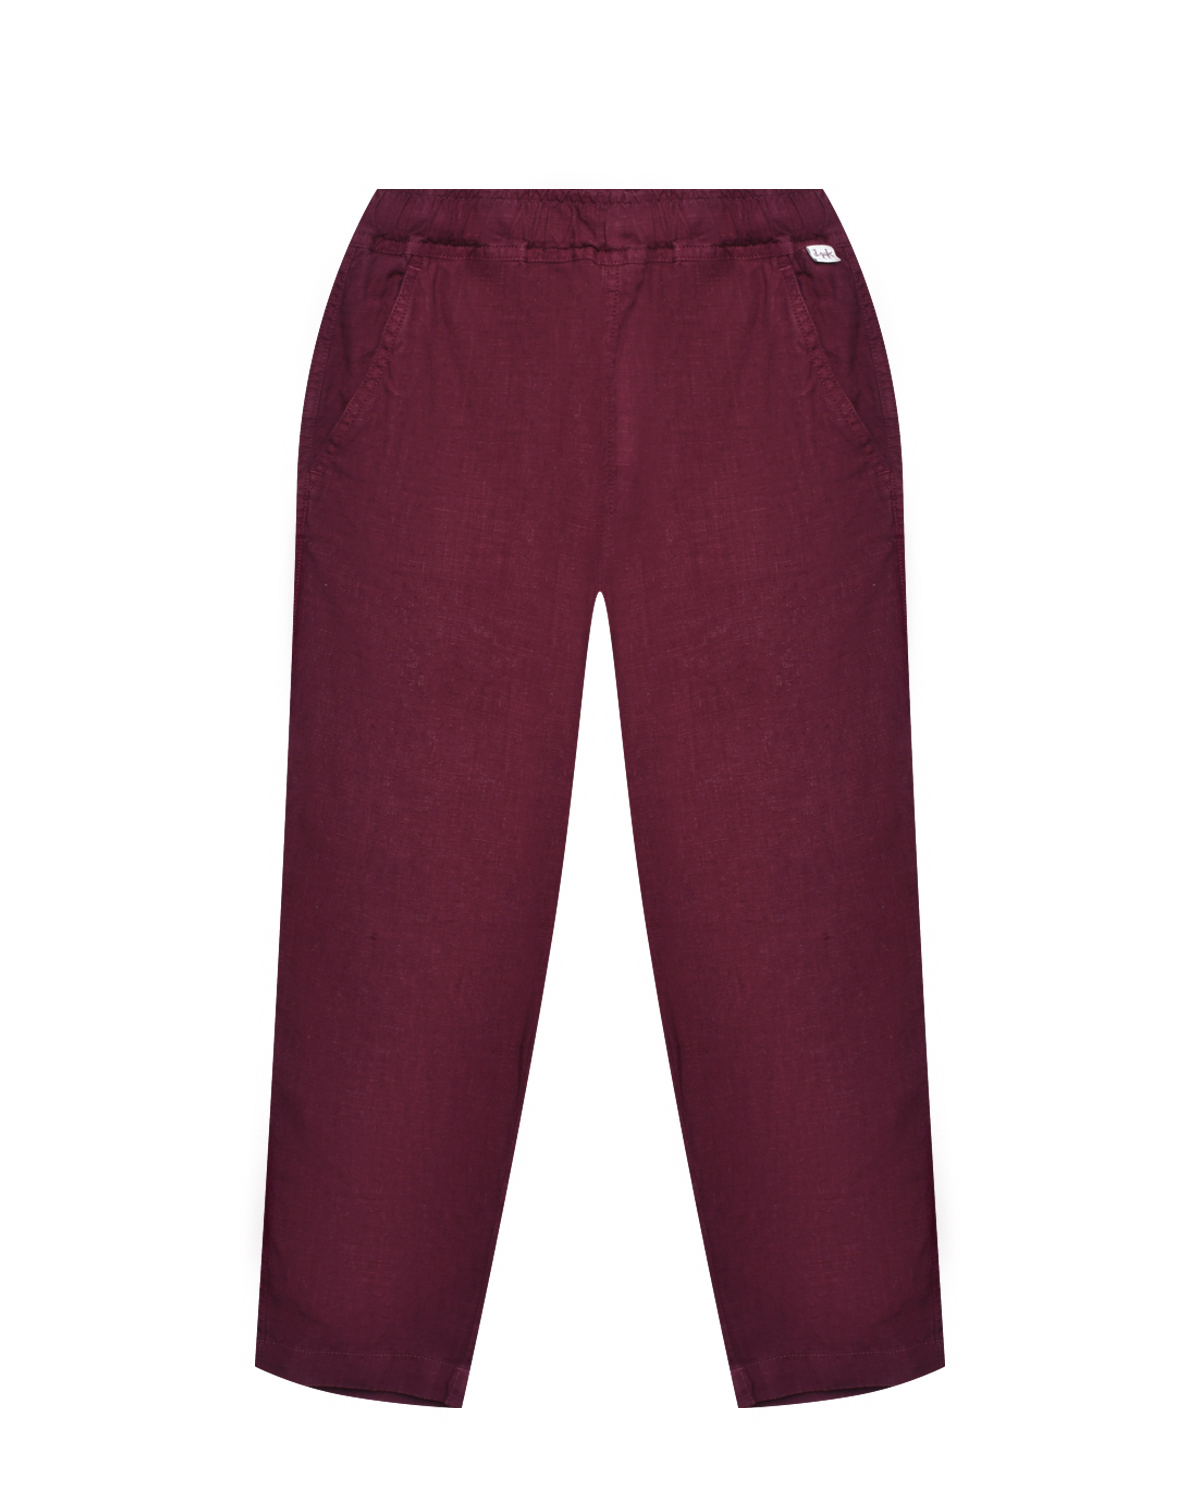 Льняные брюки с поясом на резинке IL Gufo, размер 104, цвет малиновый